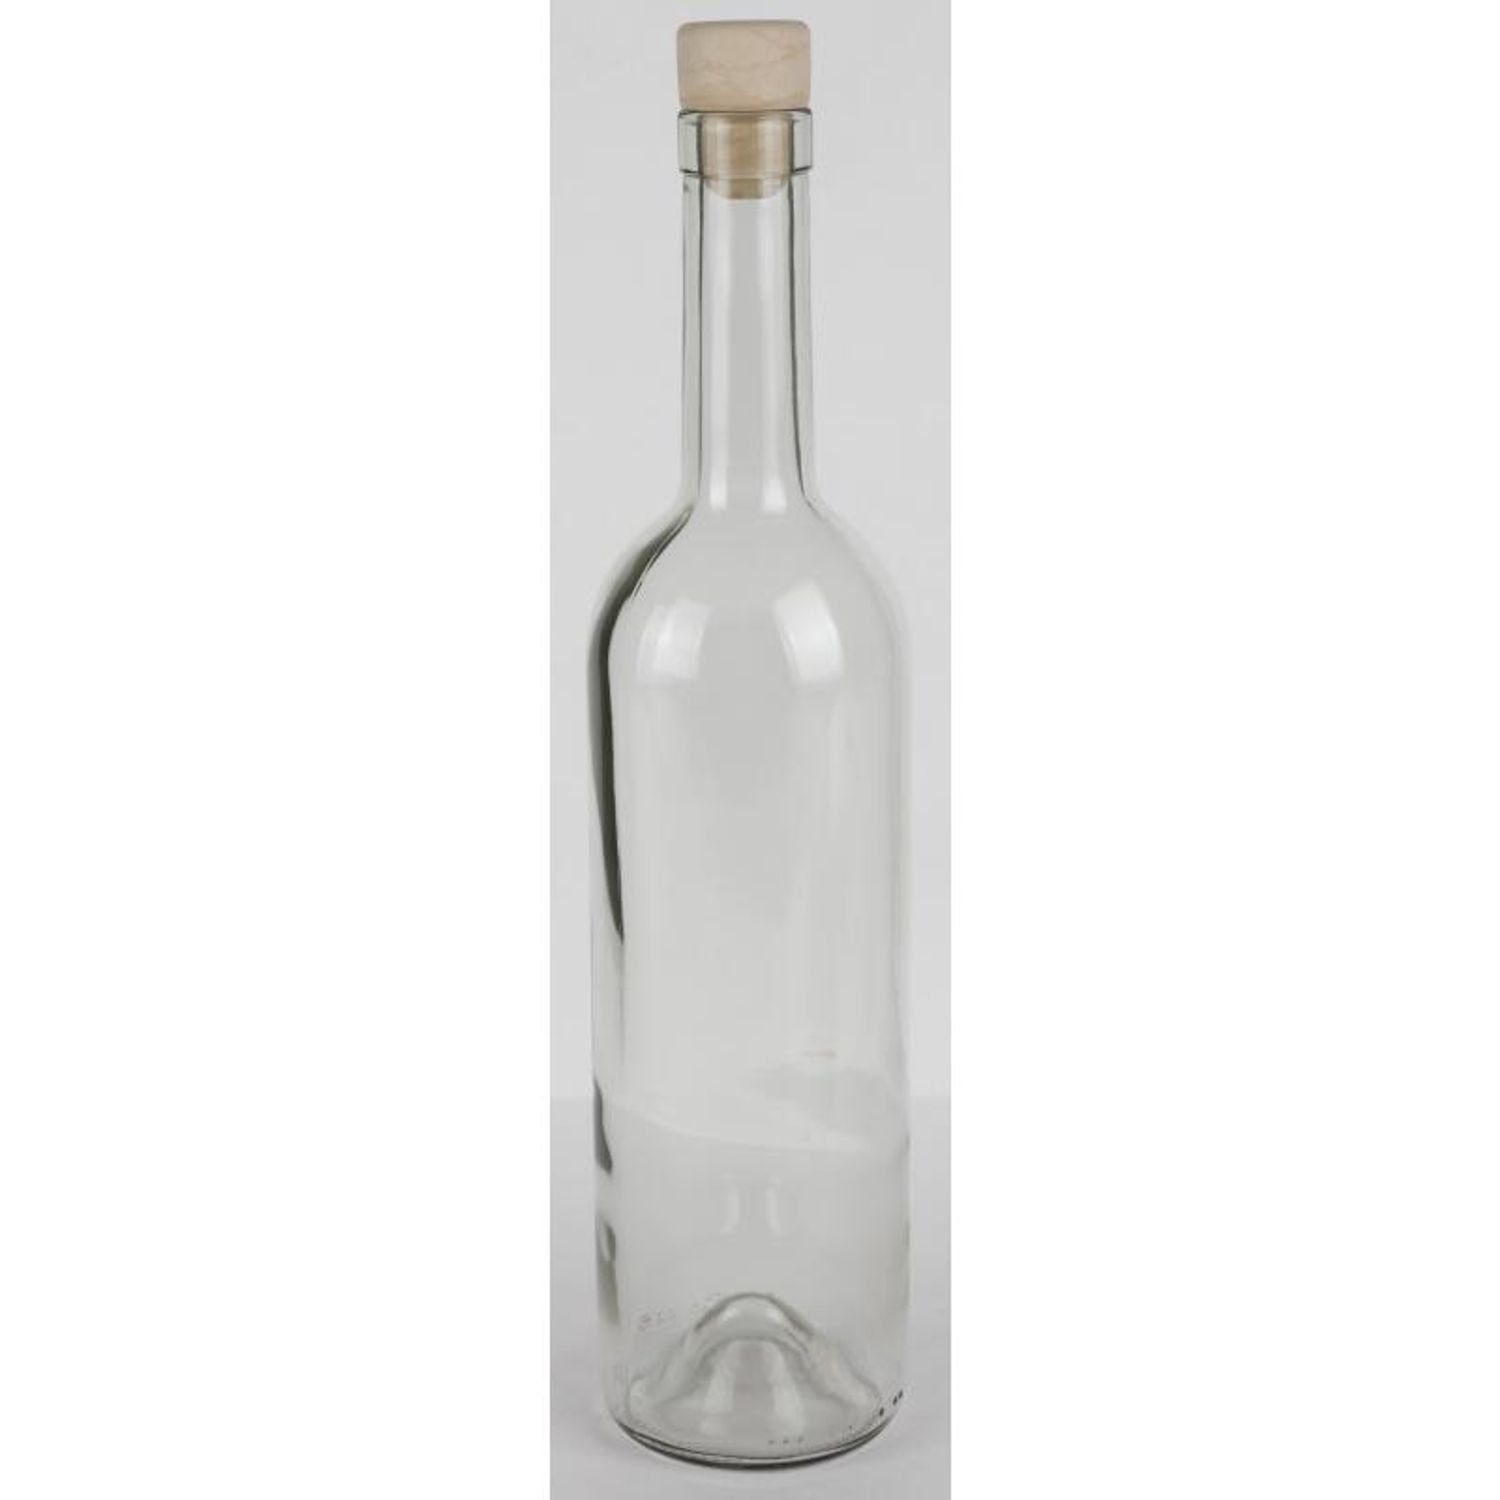 Omega Spolka Jawna Trinkflasche 15x Etikett Glasflasche Wasser Saft 0,75L Küc Korkenverschluss Trinken